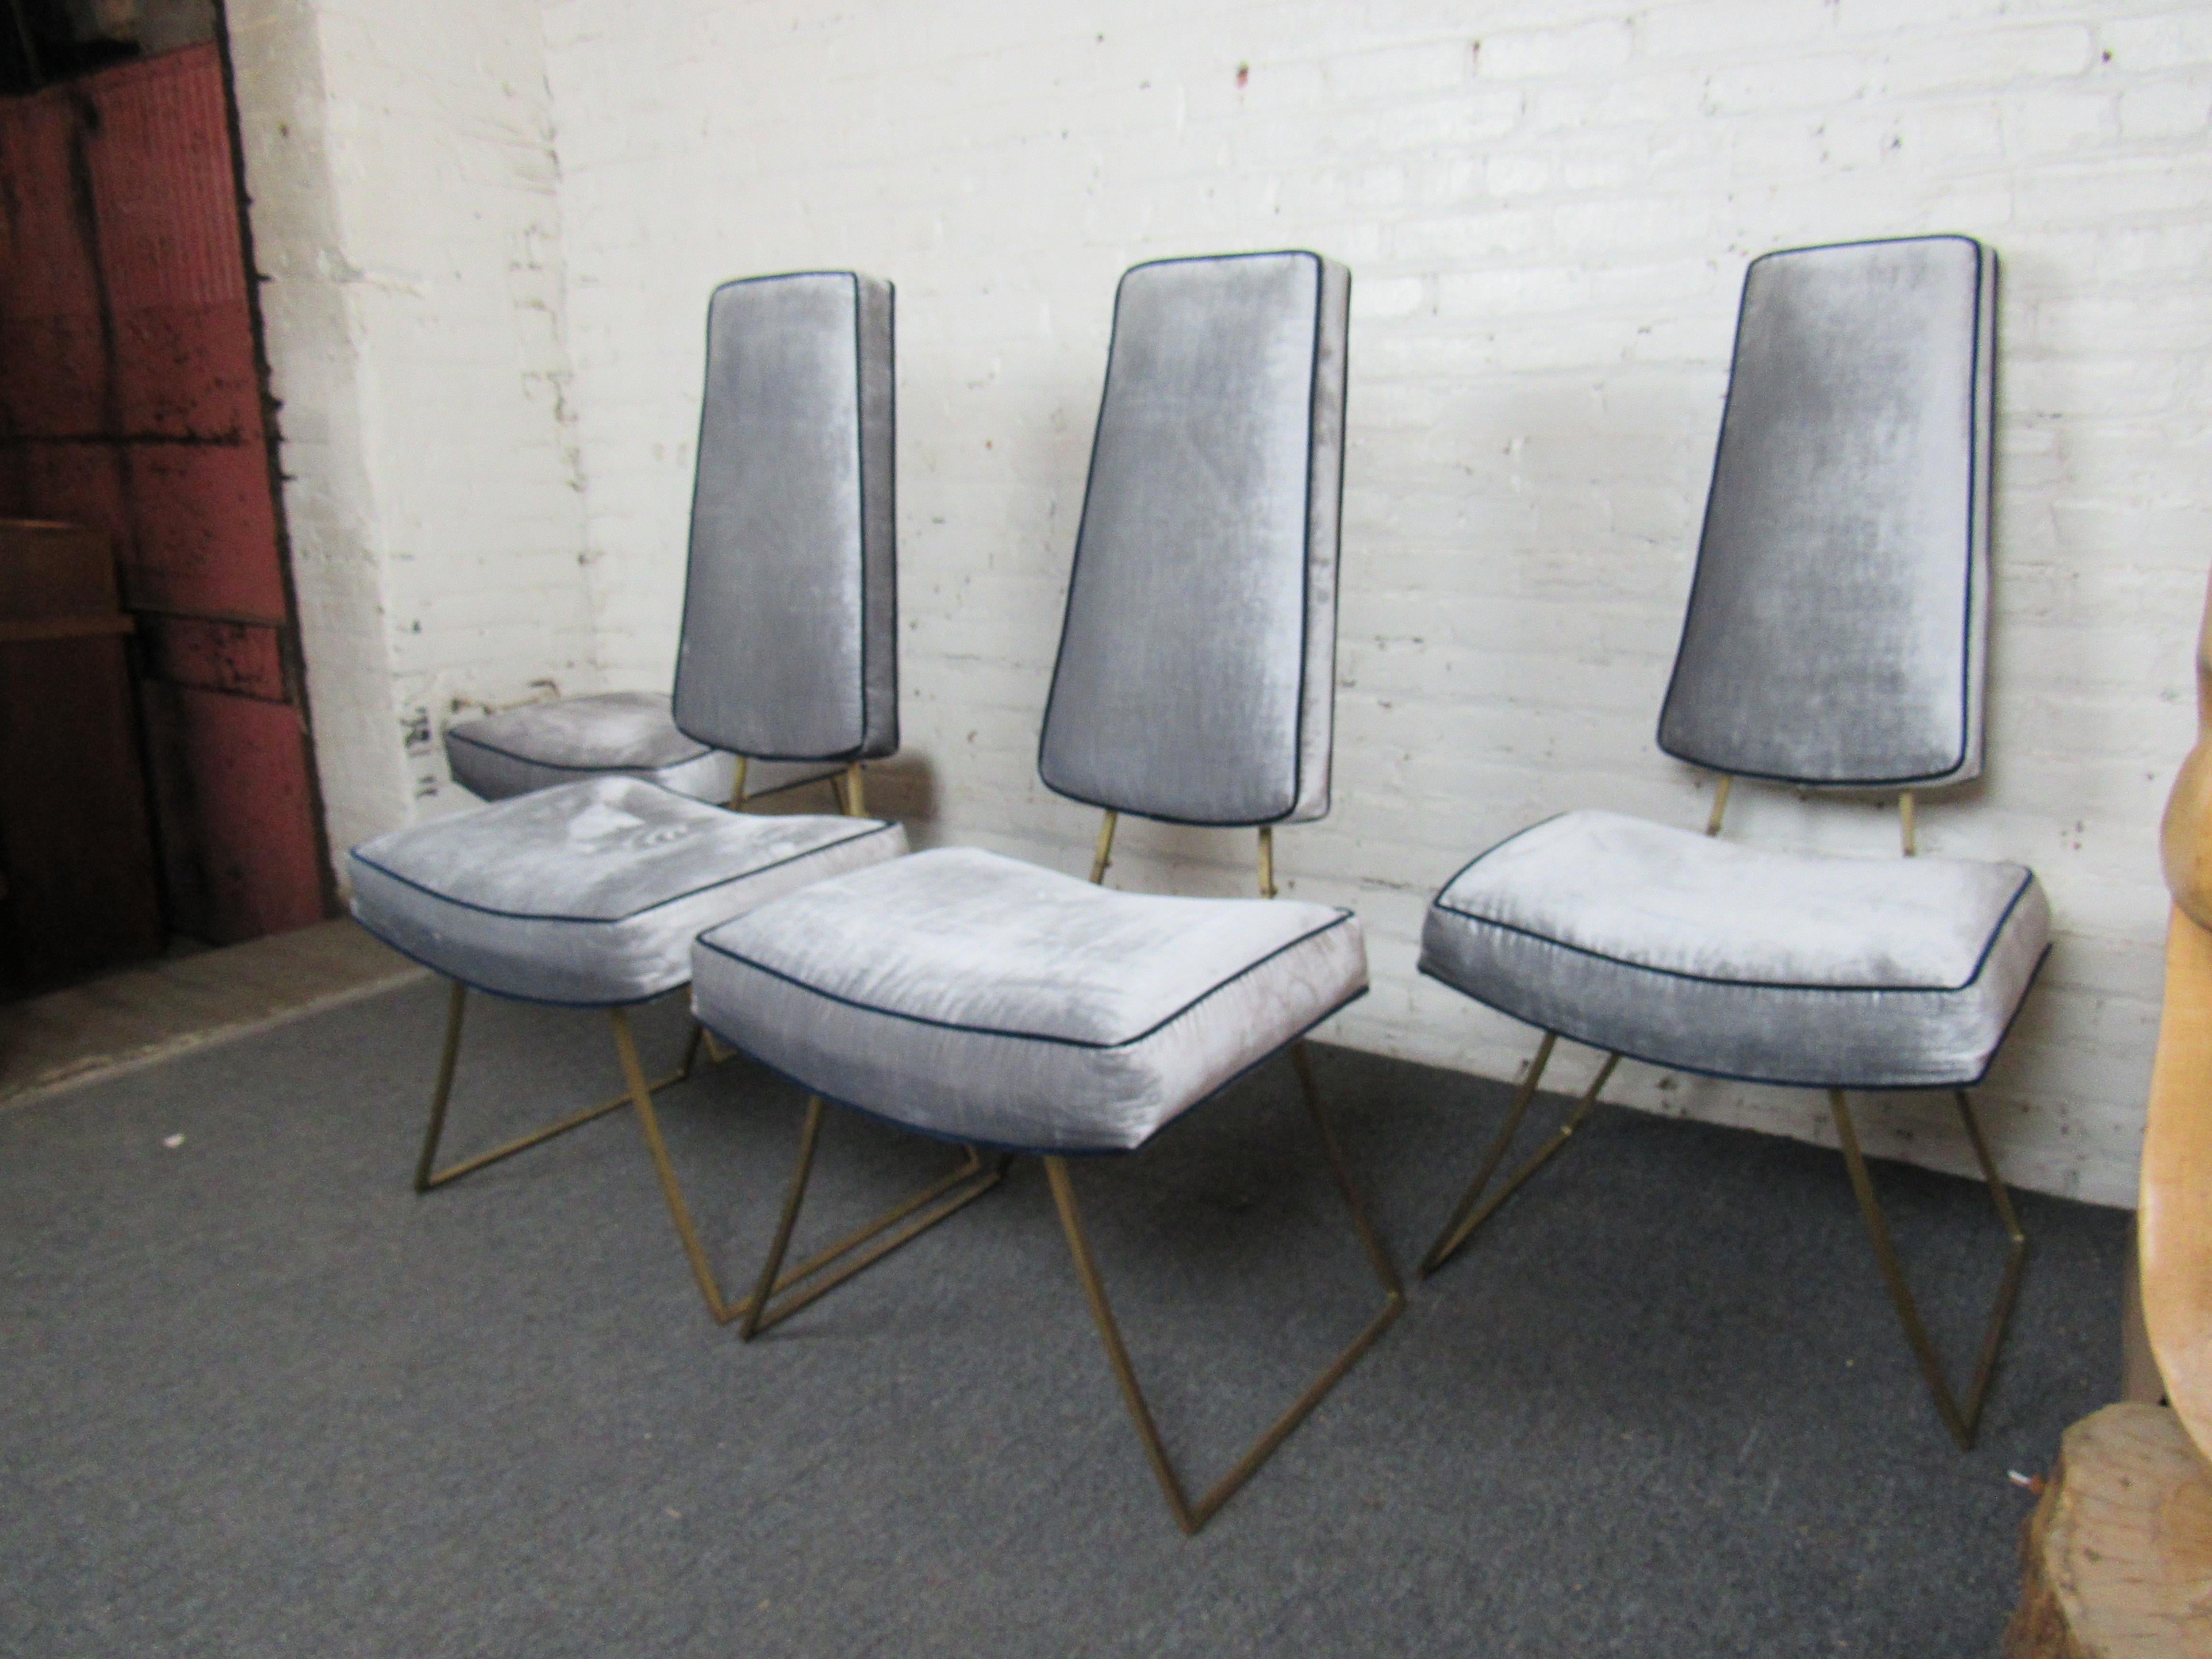 Quatre chaises de salle à manger de style Mid-Century Modern avec des cadres métalliques inspirés de Milo Baughman.
(Veuillez confirmer l'emplacement de l'article - NY ou NJ - avec le concessionnaire).
  